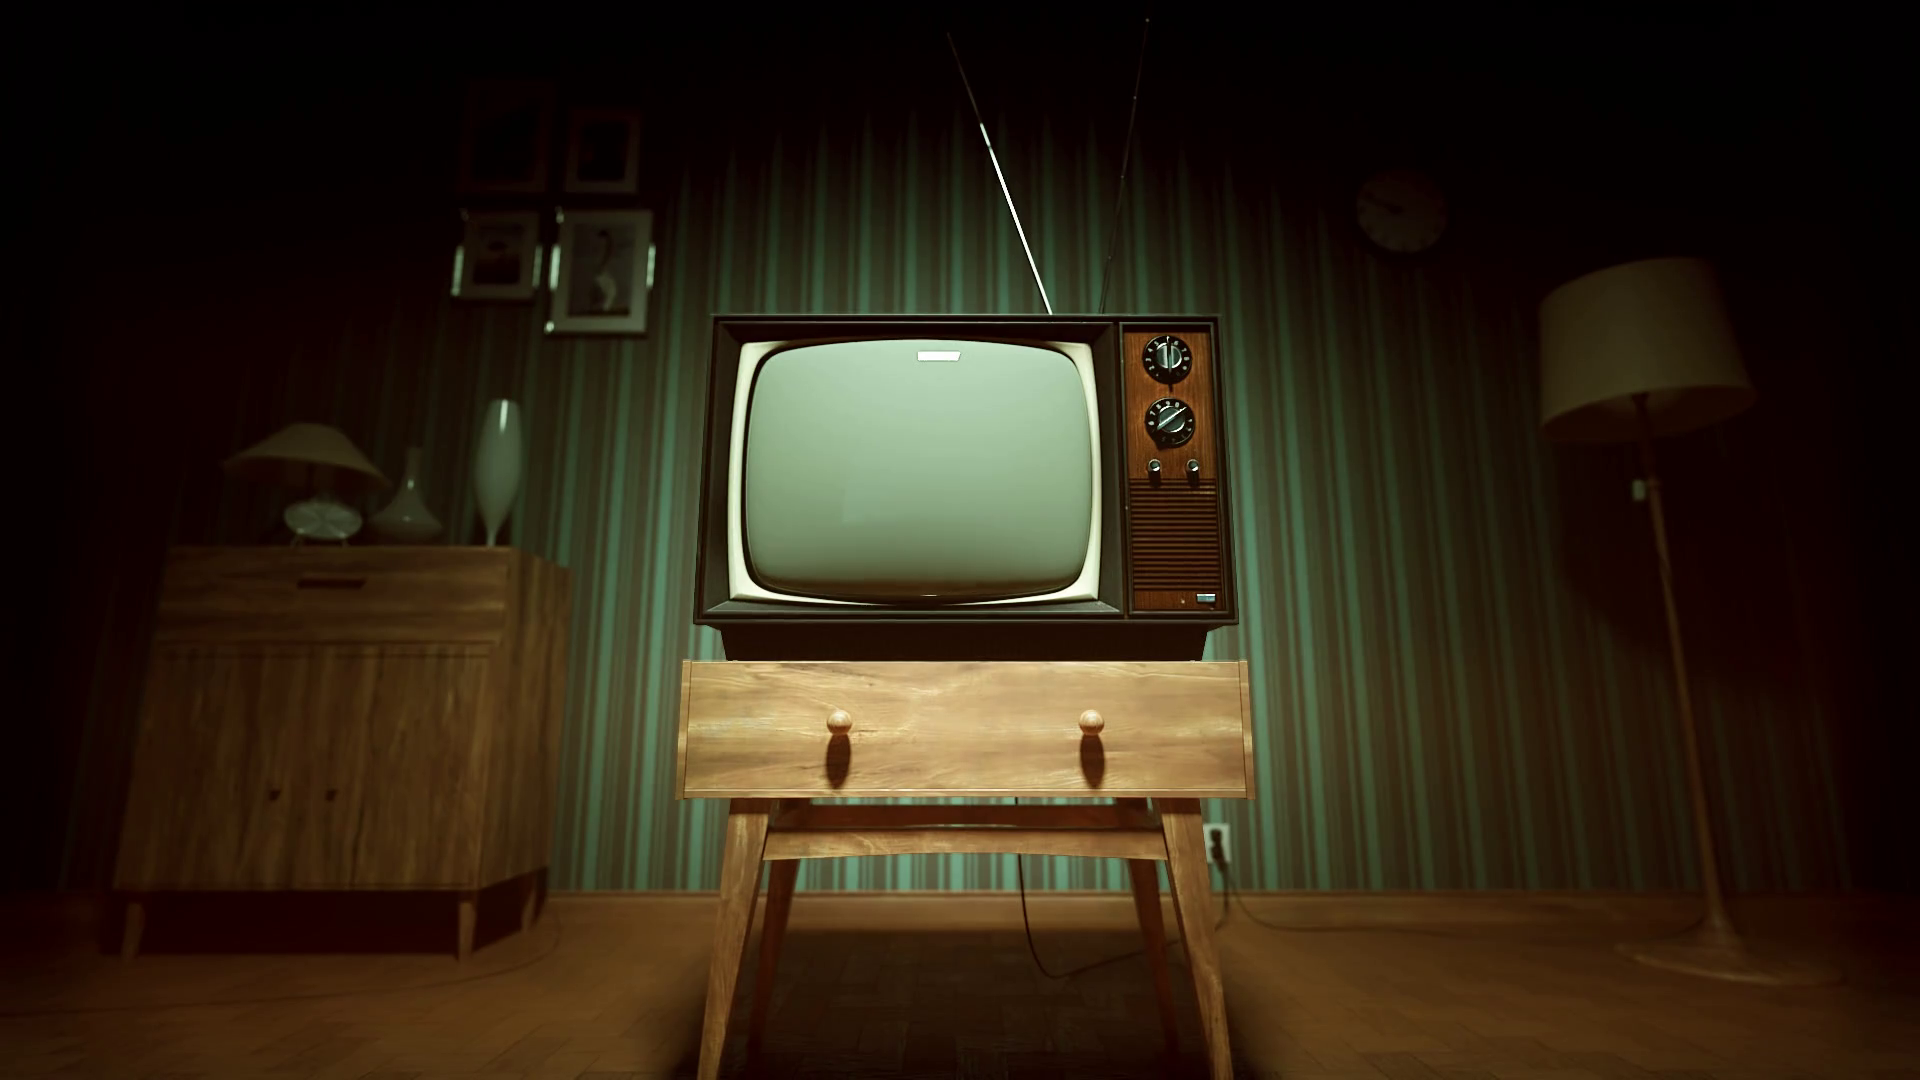 Красивая заставка на телевизор. Старый телевизор. Старинный телевизор. Старый телевизор в комнате. Ретро телевизор.